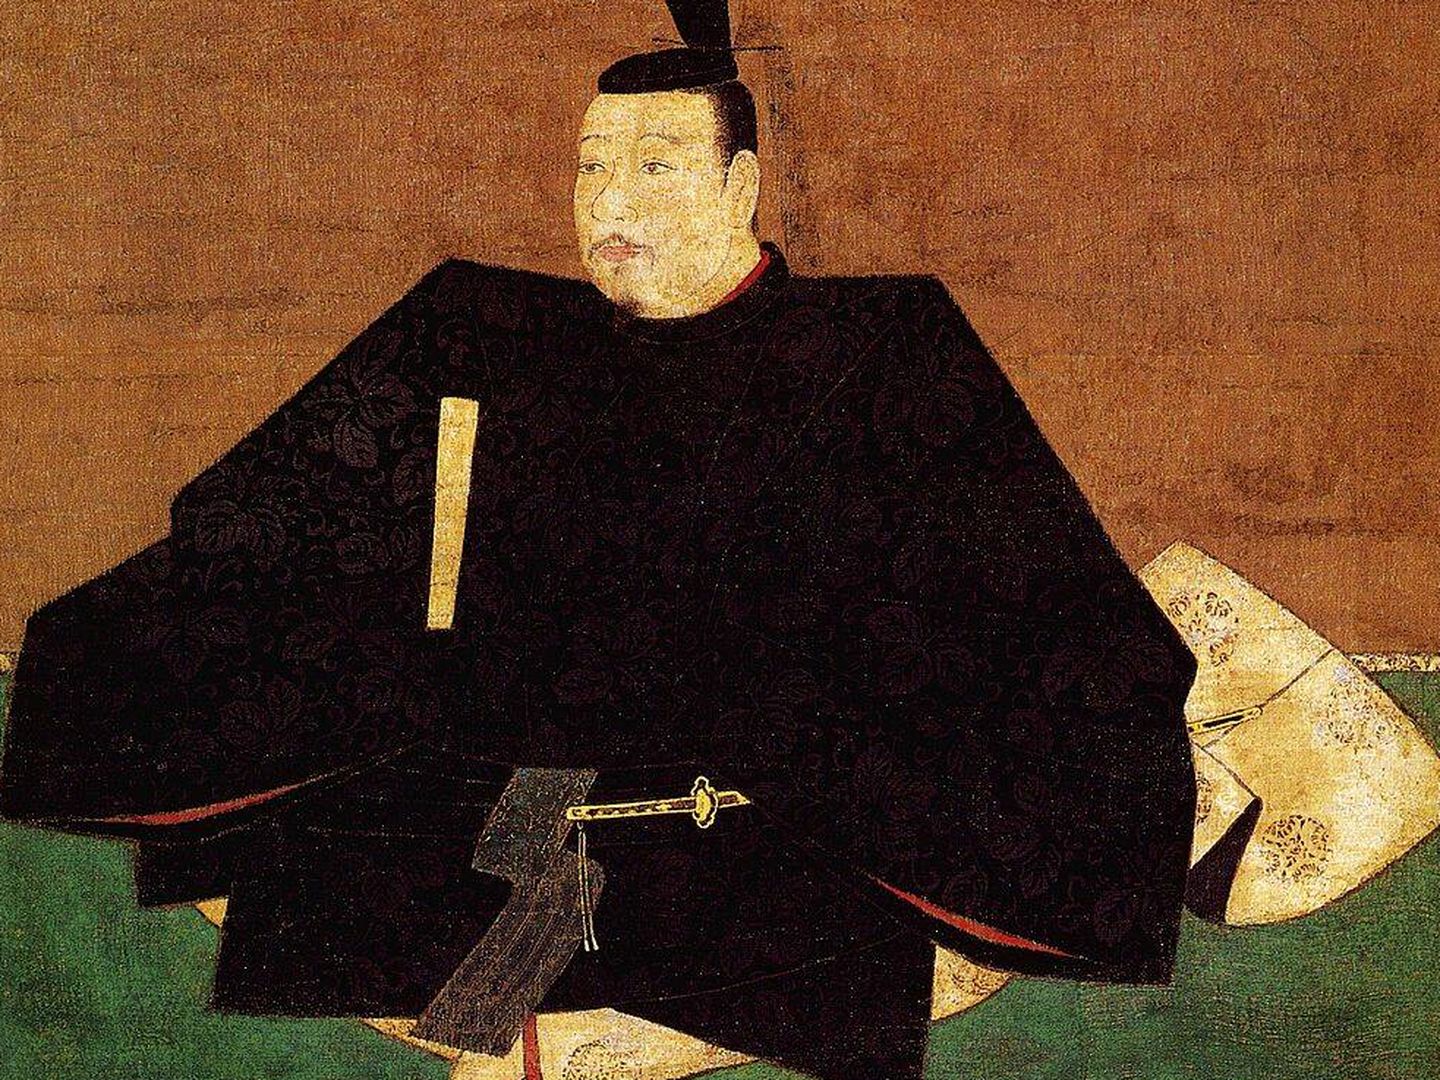 Retrato del gobernador japonés Ashikaga Takauji, abanico en mano, durante el período Muromachi, entre 1338 y 1573. Fuente: Wikipedia